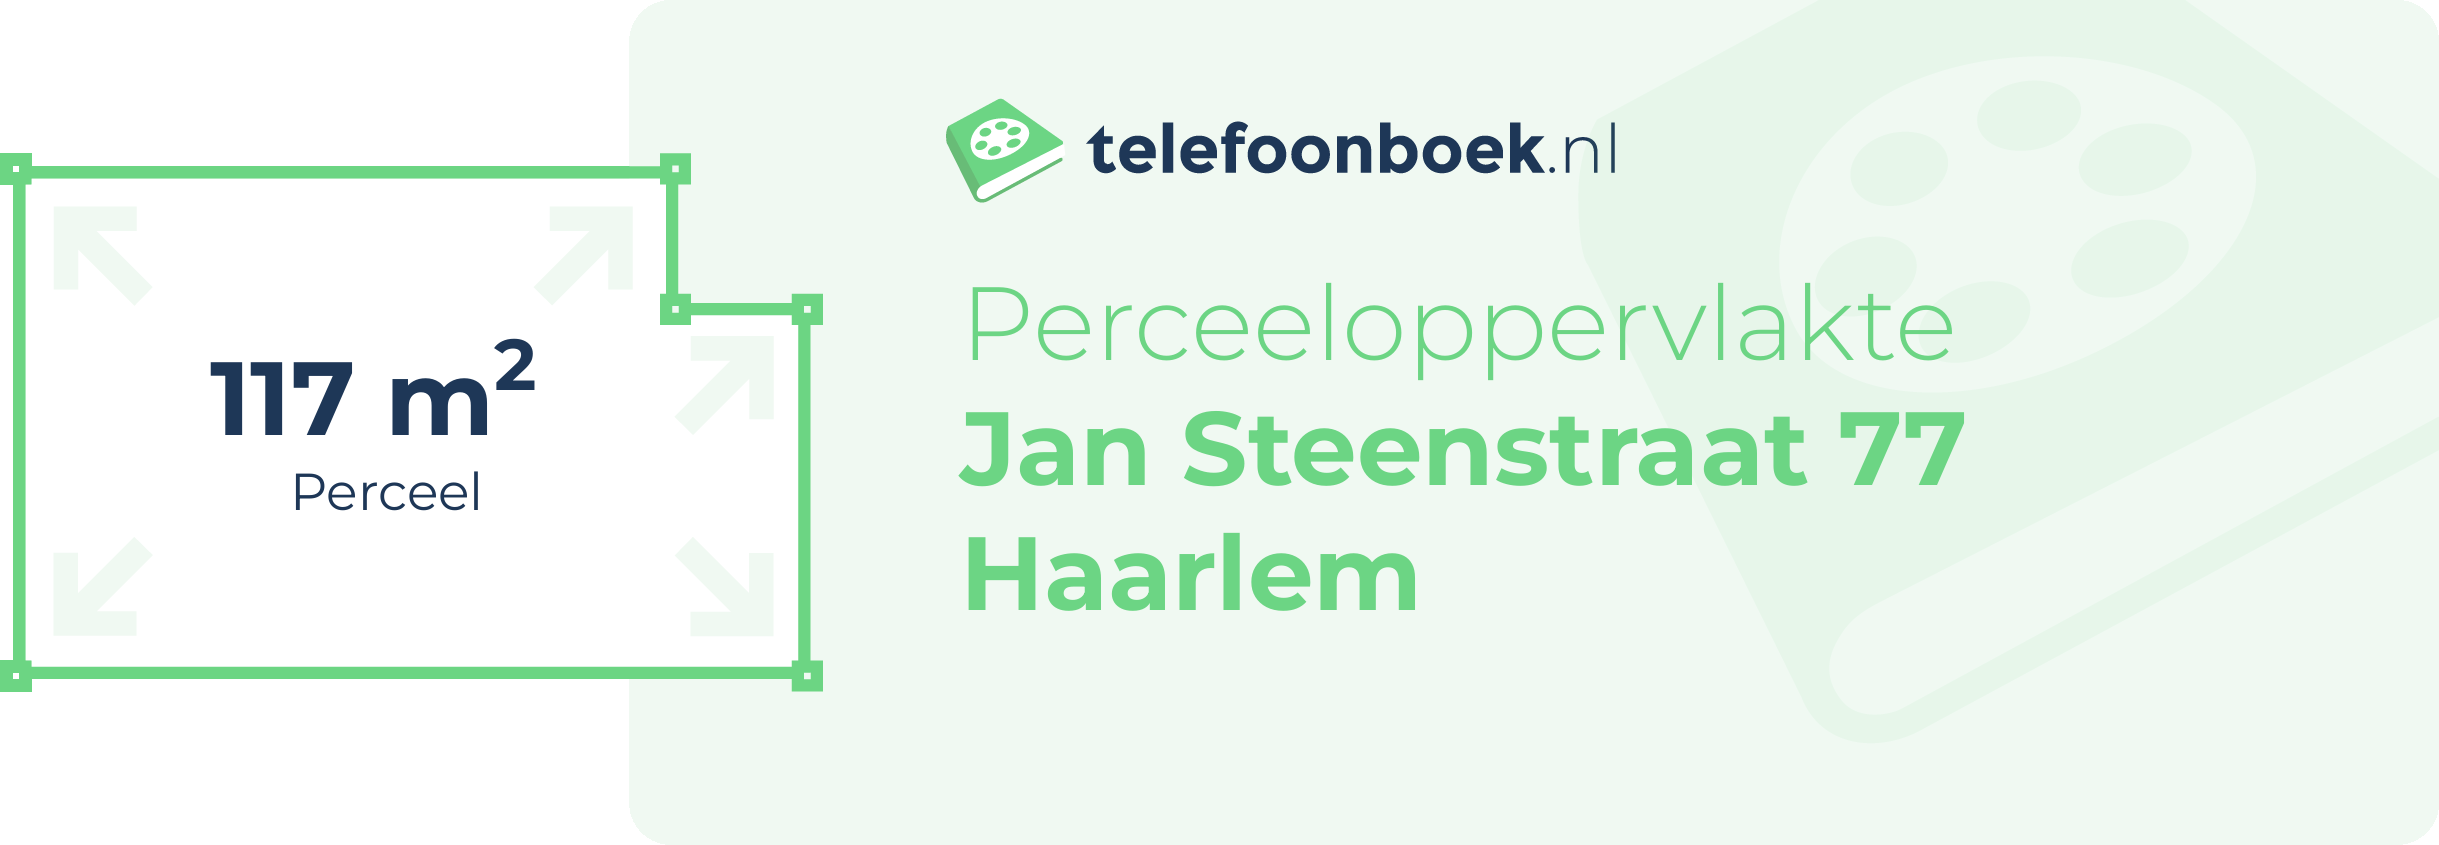 Perceeloppervlakte Jan Steenstraat 77 Haarlem